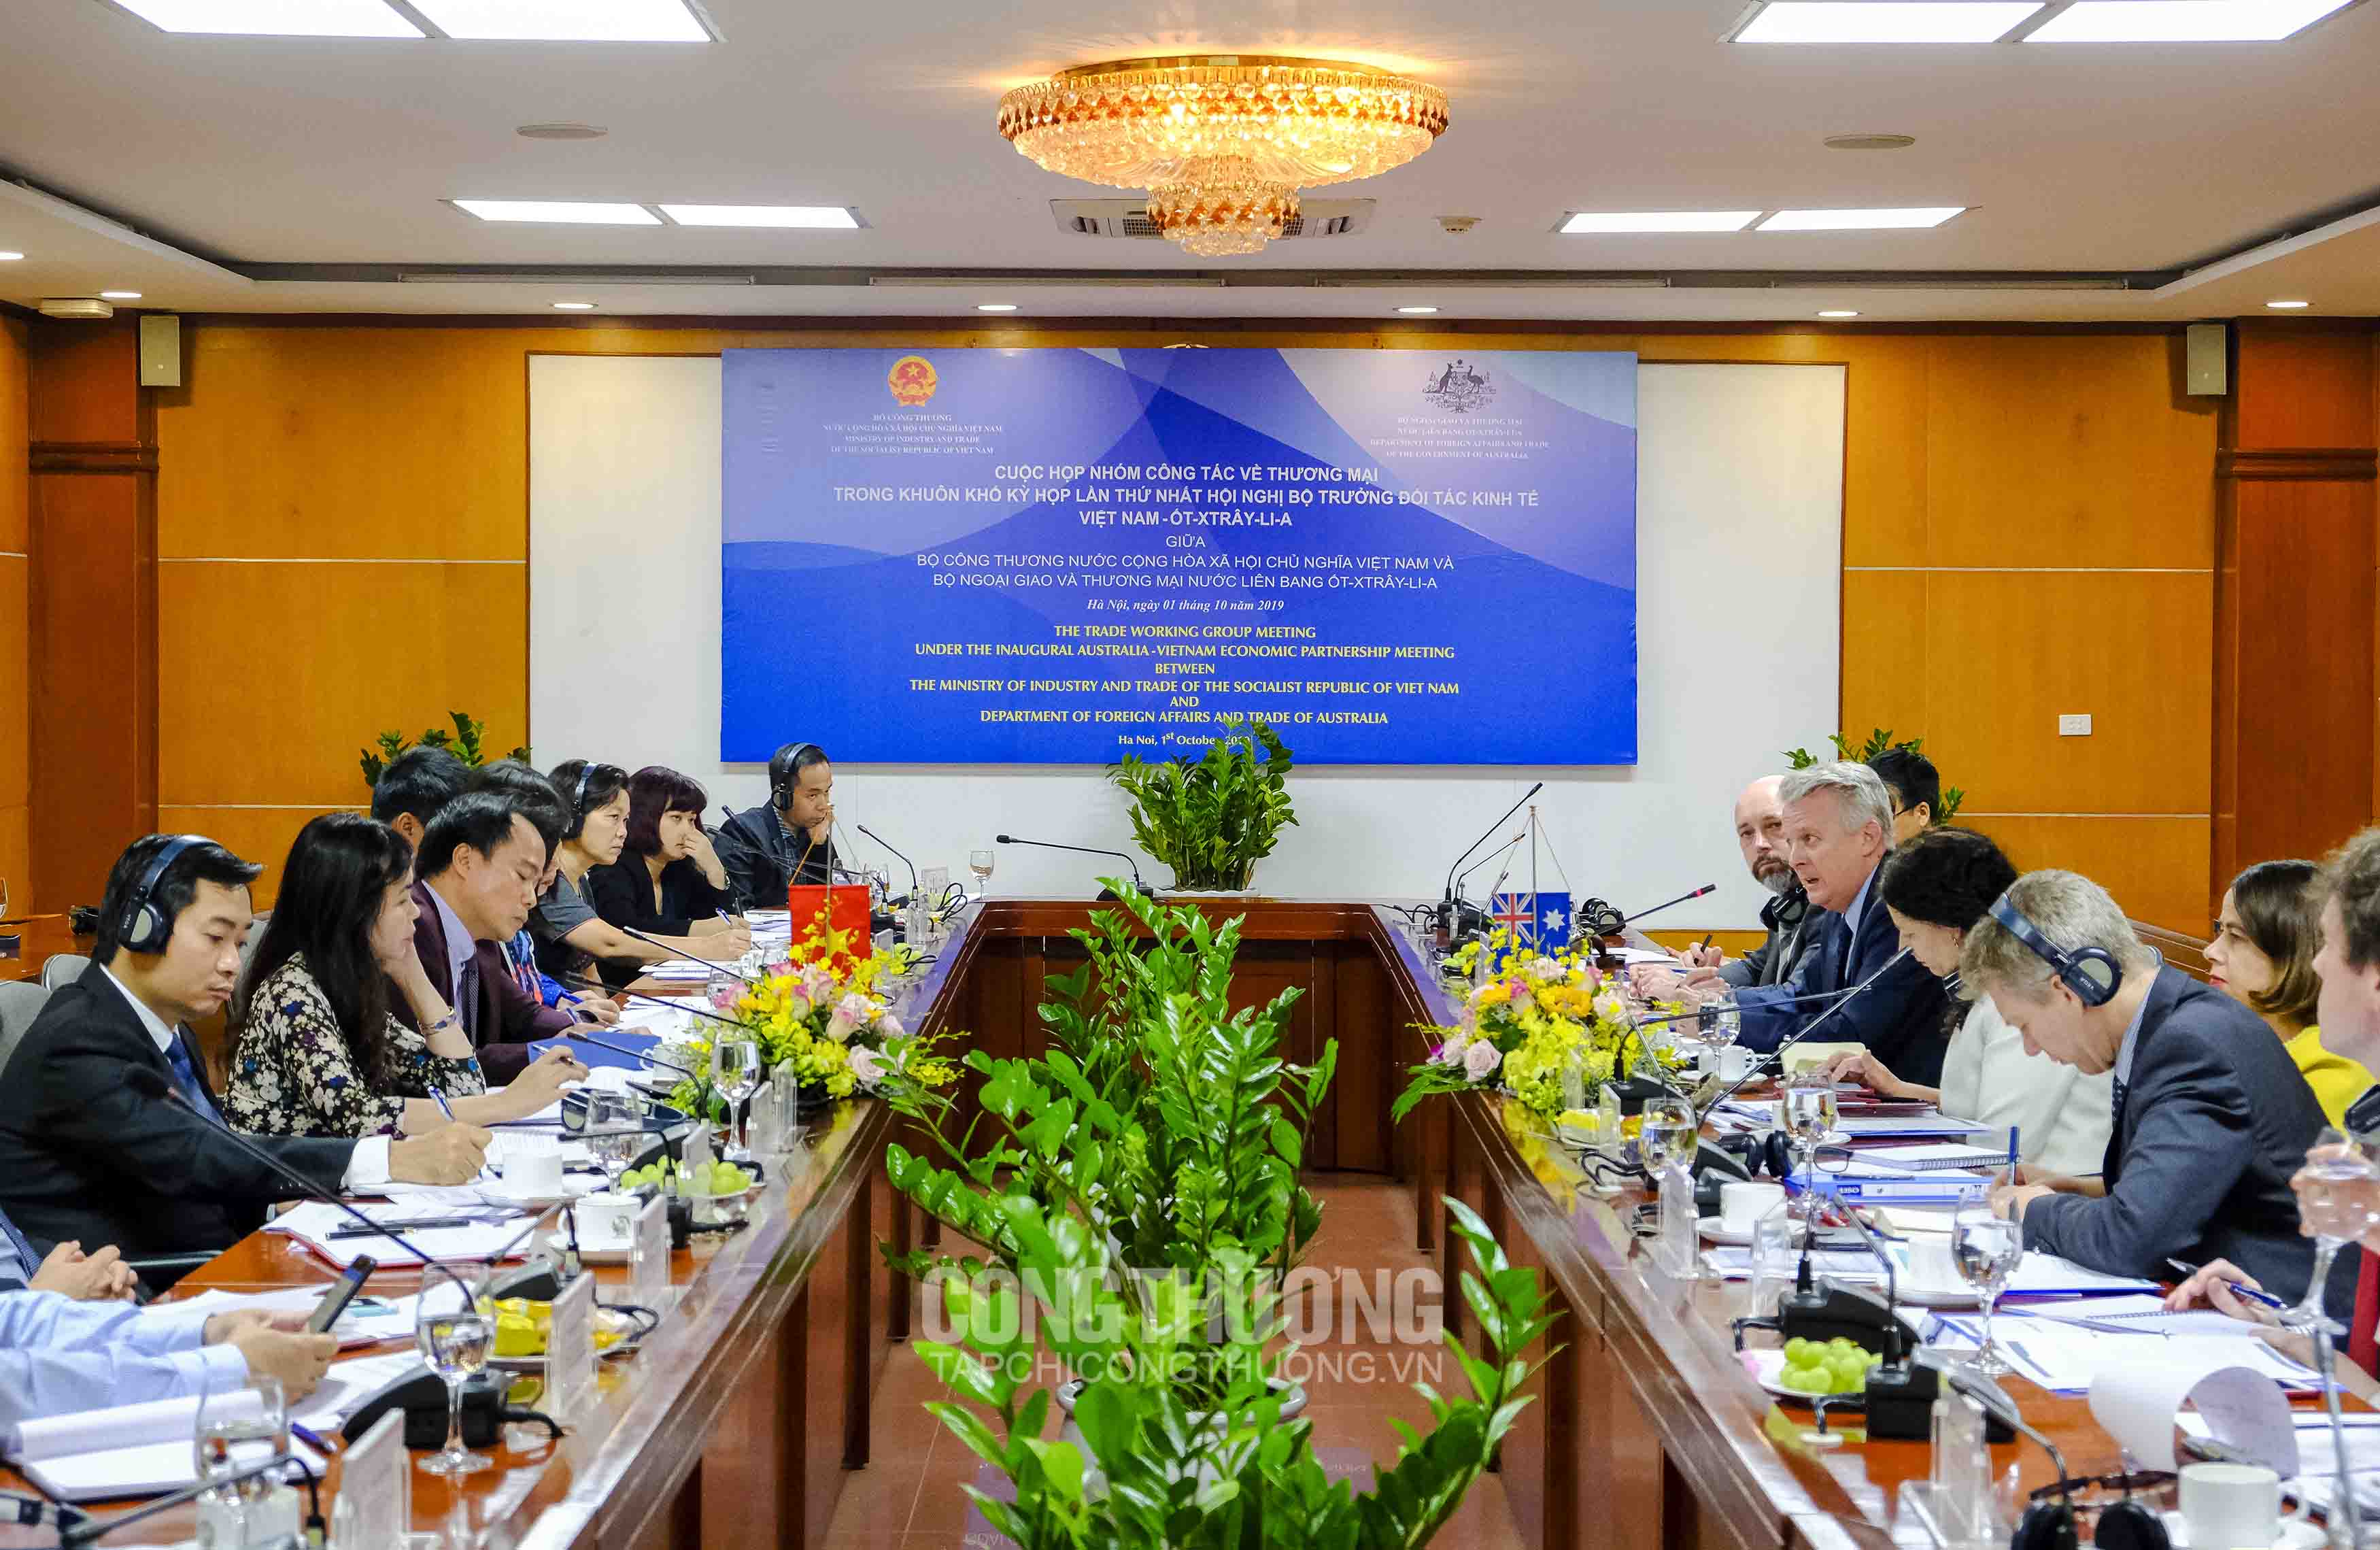 Cuộc họp Nhóm công tác về Thương mại thuộc khuôn khổ Hội nghị Bộ trưởng Đối tác kinh tế Việt Nam – Úc lần thứ nhất tại Bộ Công Thương